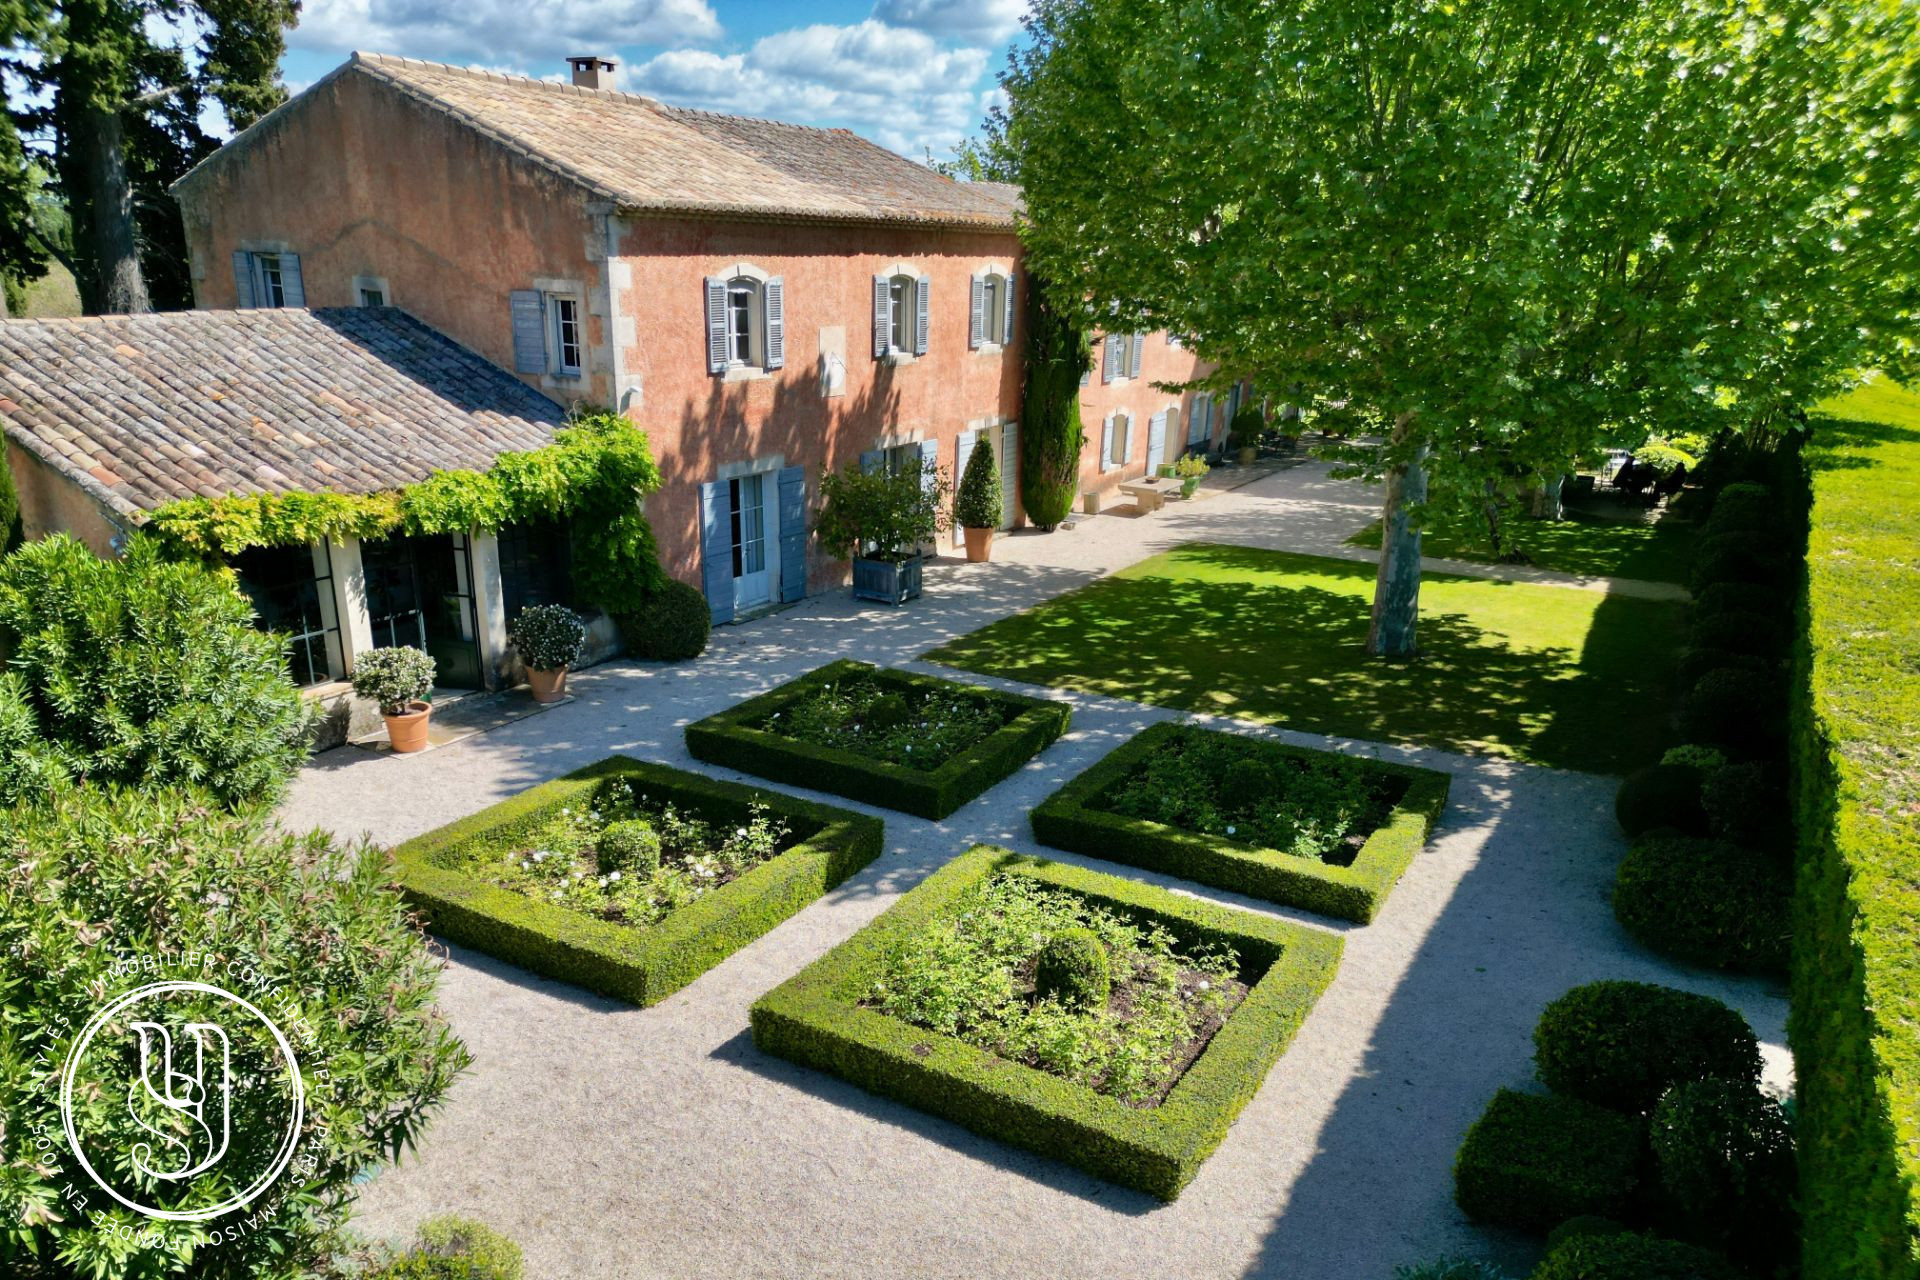 Saint-Rémy-de-Provence - close to the town center, a large Provencal farmhouse with uns - image 3